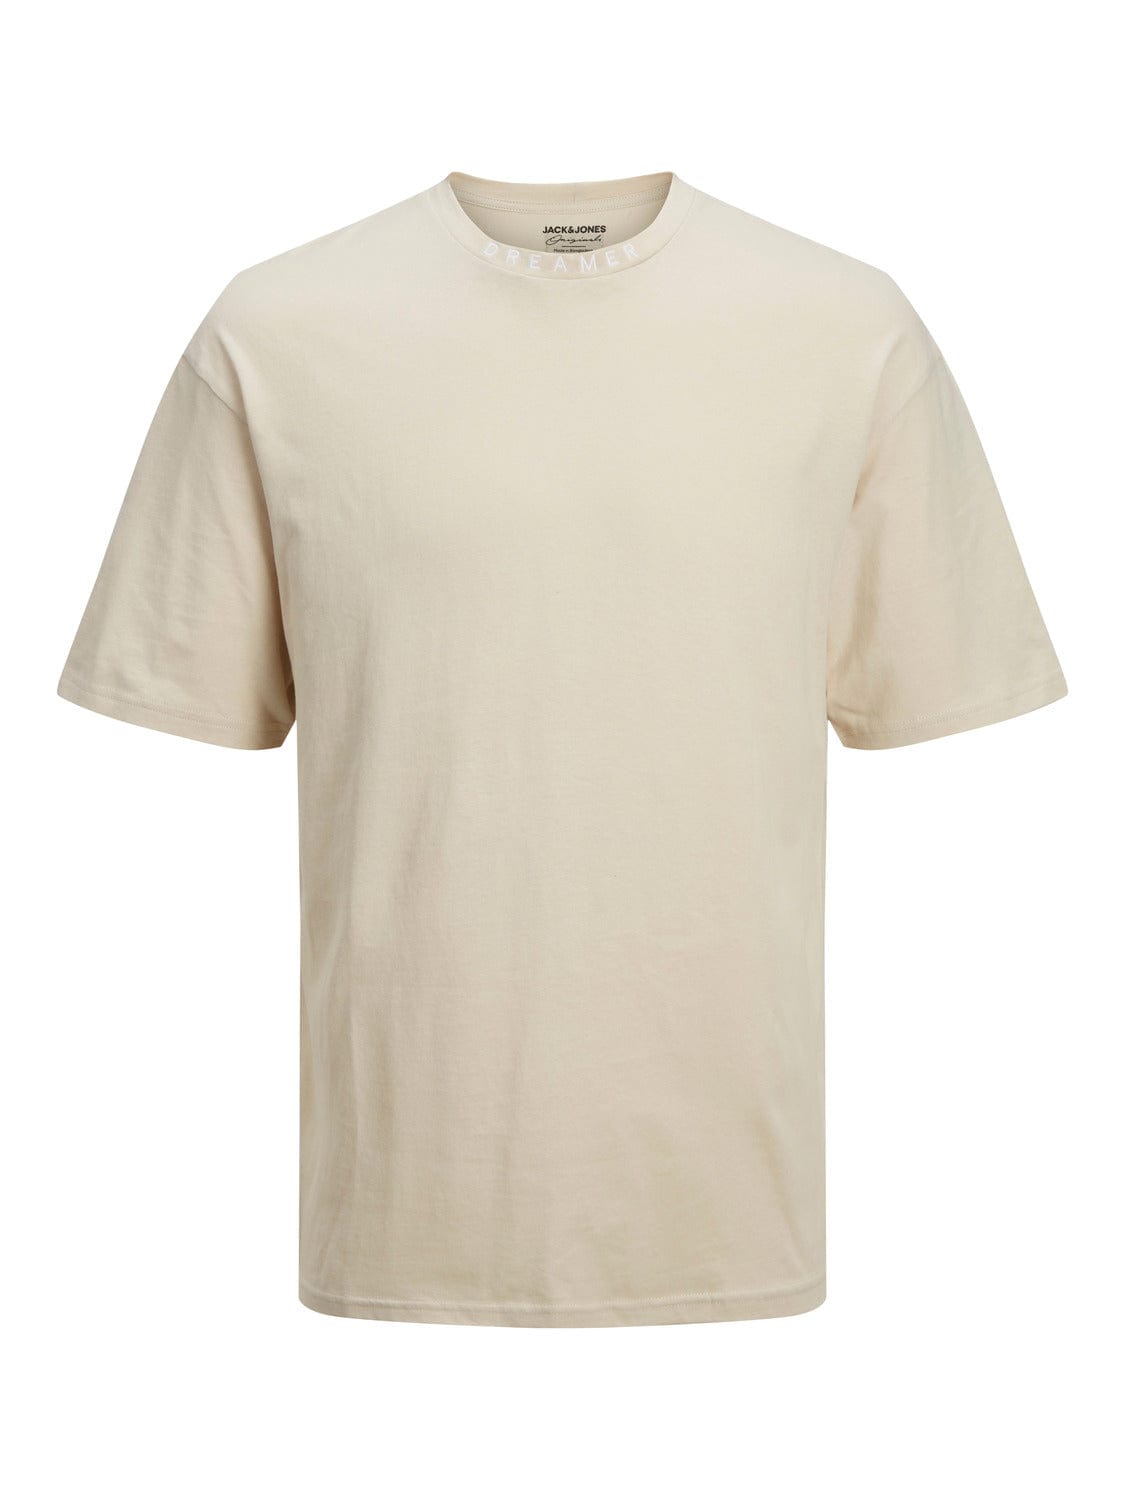 Camiseta hombre básica cuello redondo algodón blanco Dreamer